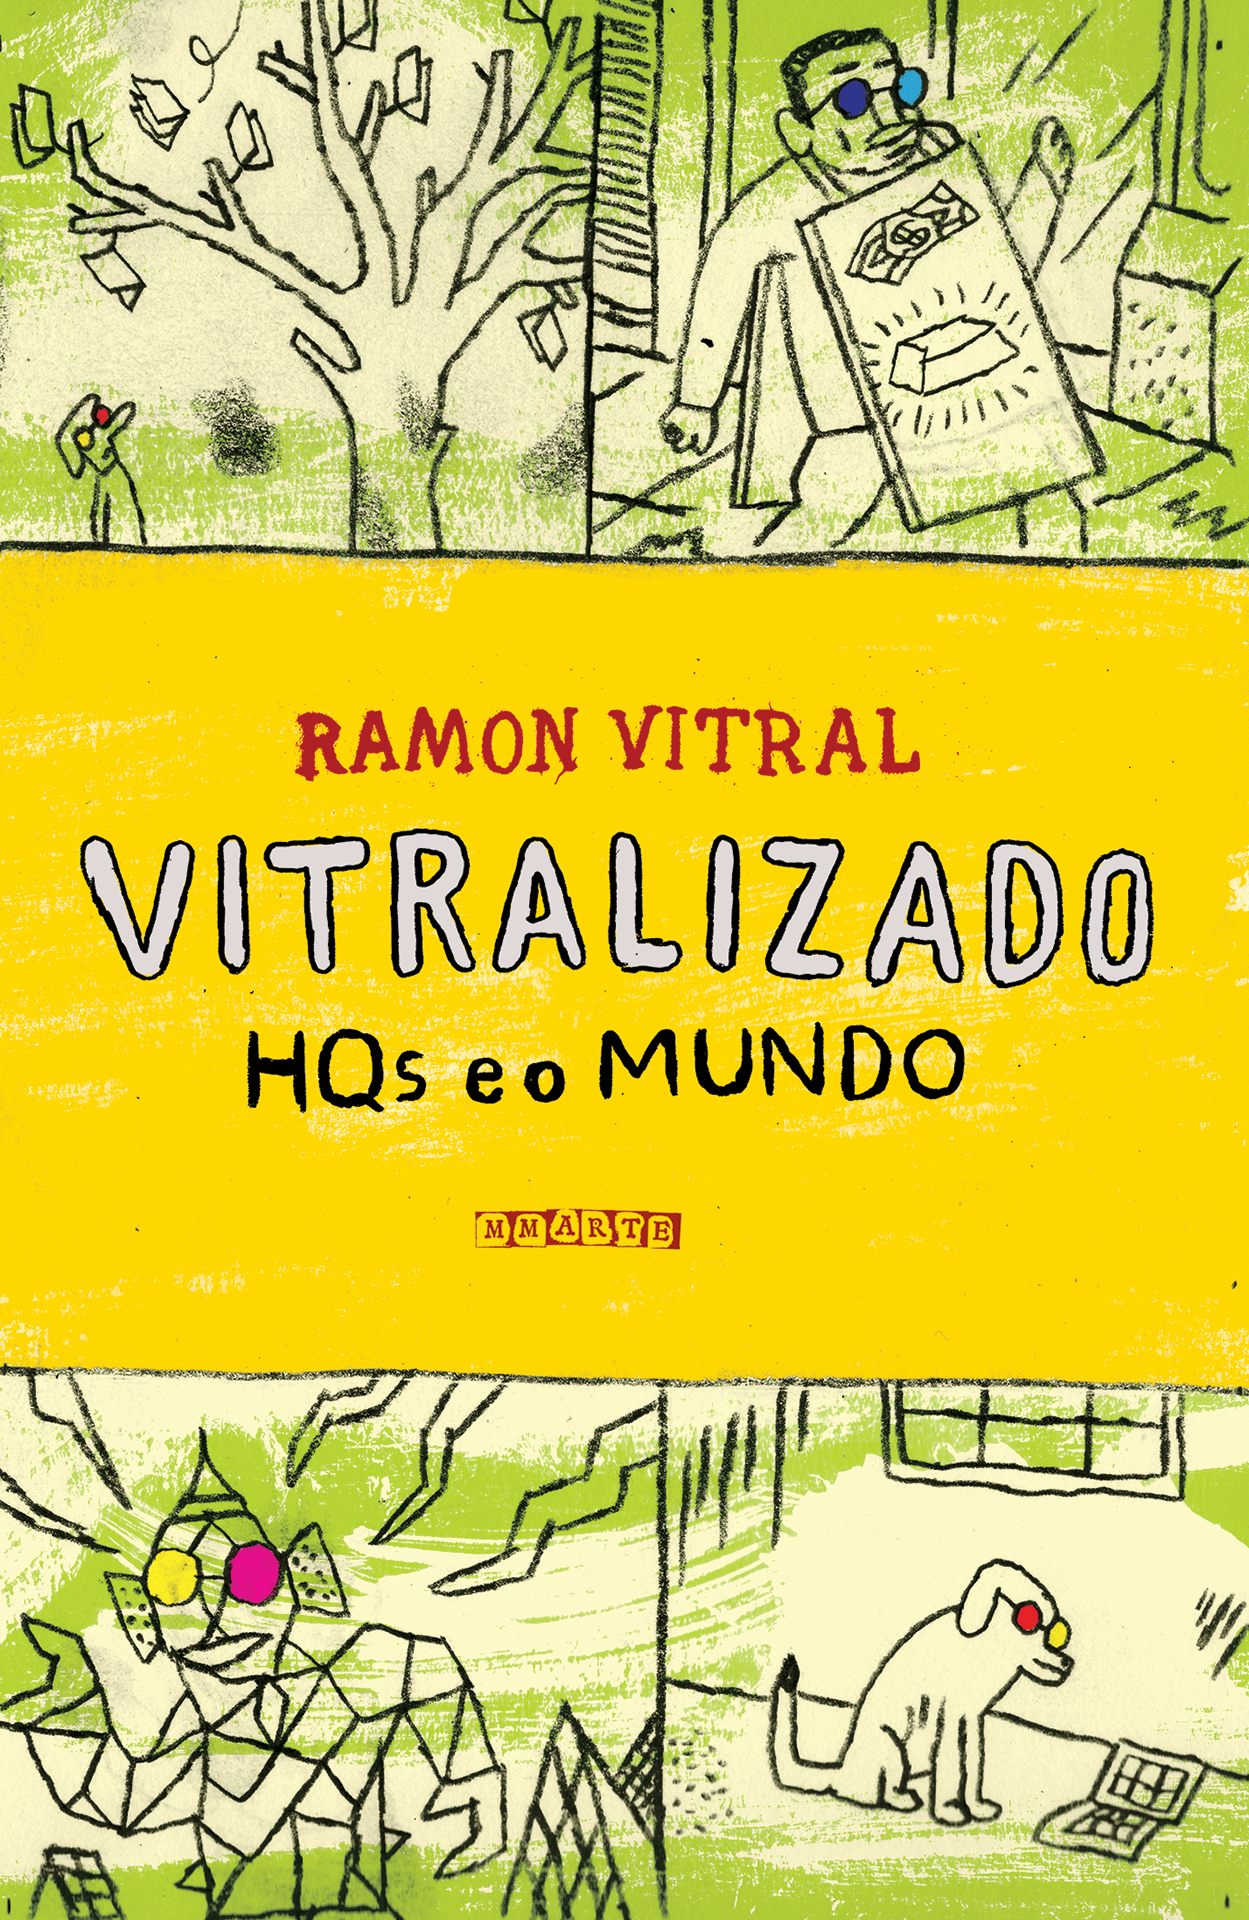 O Vitralizado vai virar livro! Confira a capa de Fabio Zimbres para ‘Vitralizado – HQs e o mundo’, pela editora MMarte